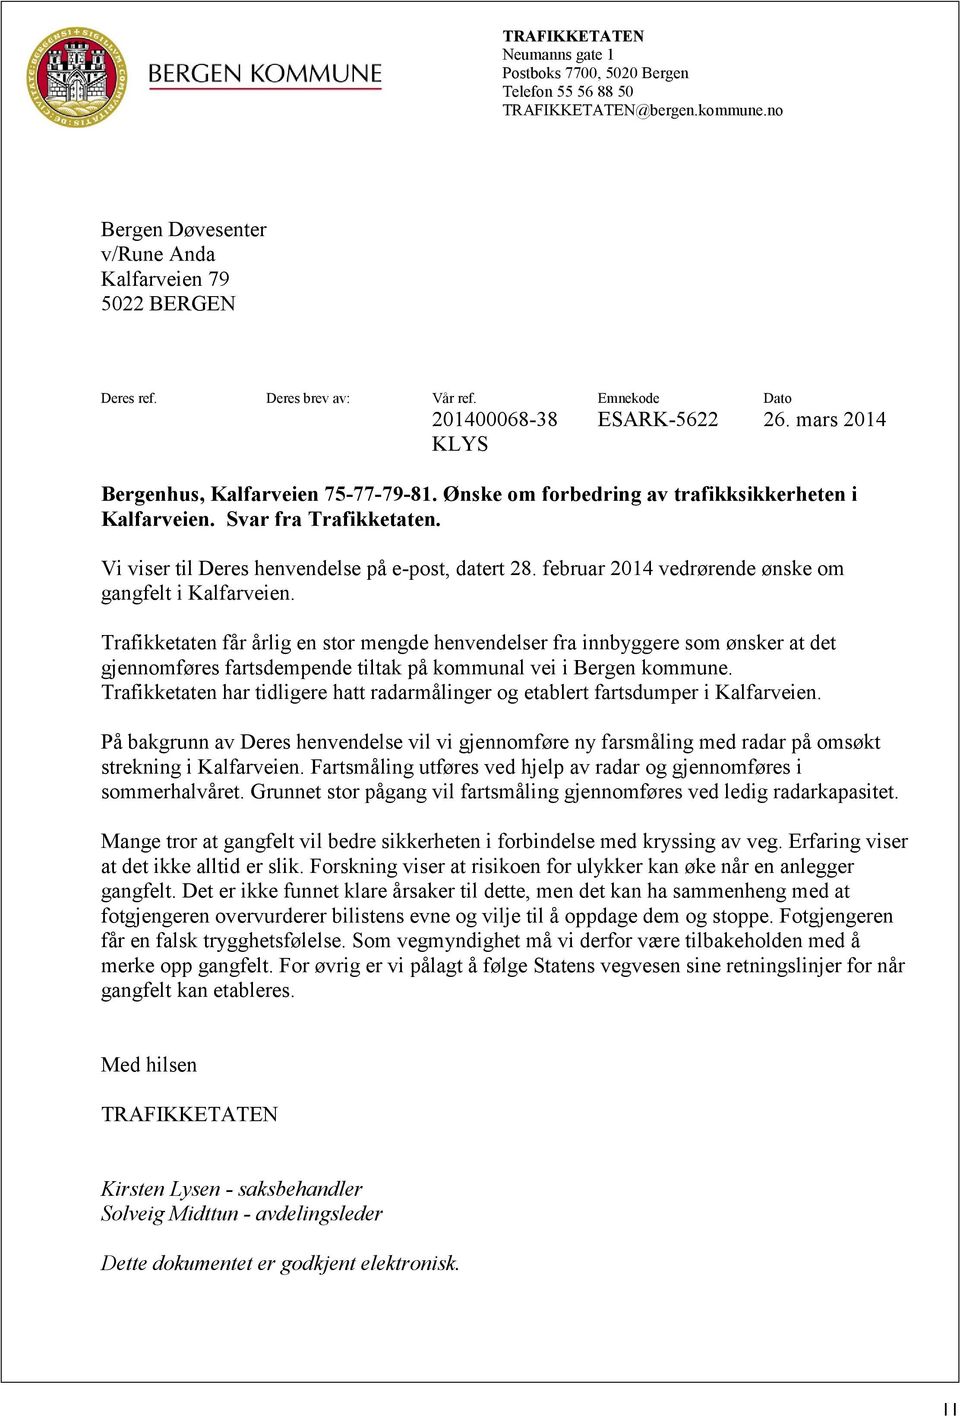 Vi viser til Deres henvendelse på e-post, datert 28. februar 2014 vedrørende ønske om gangfelt i Kalfarveien.